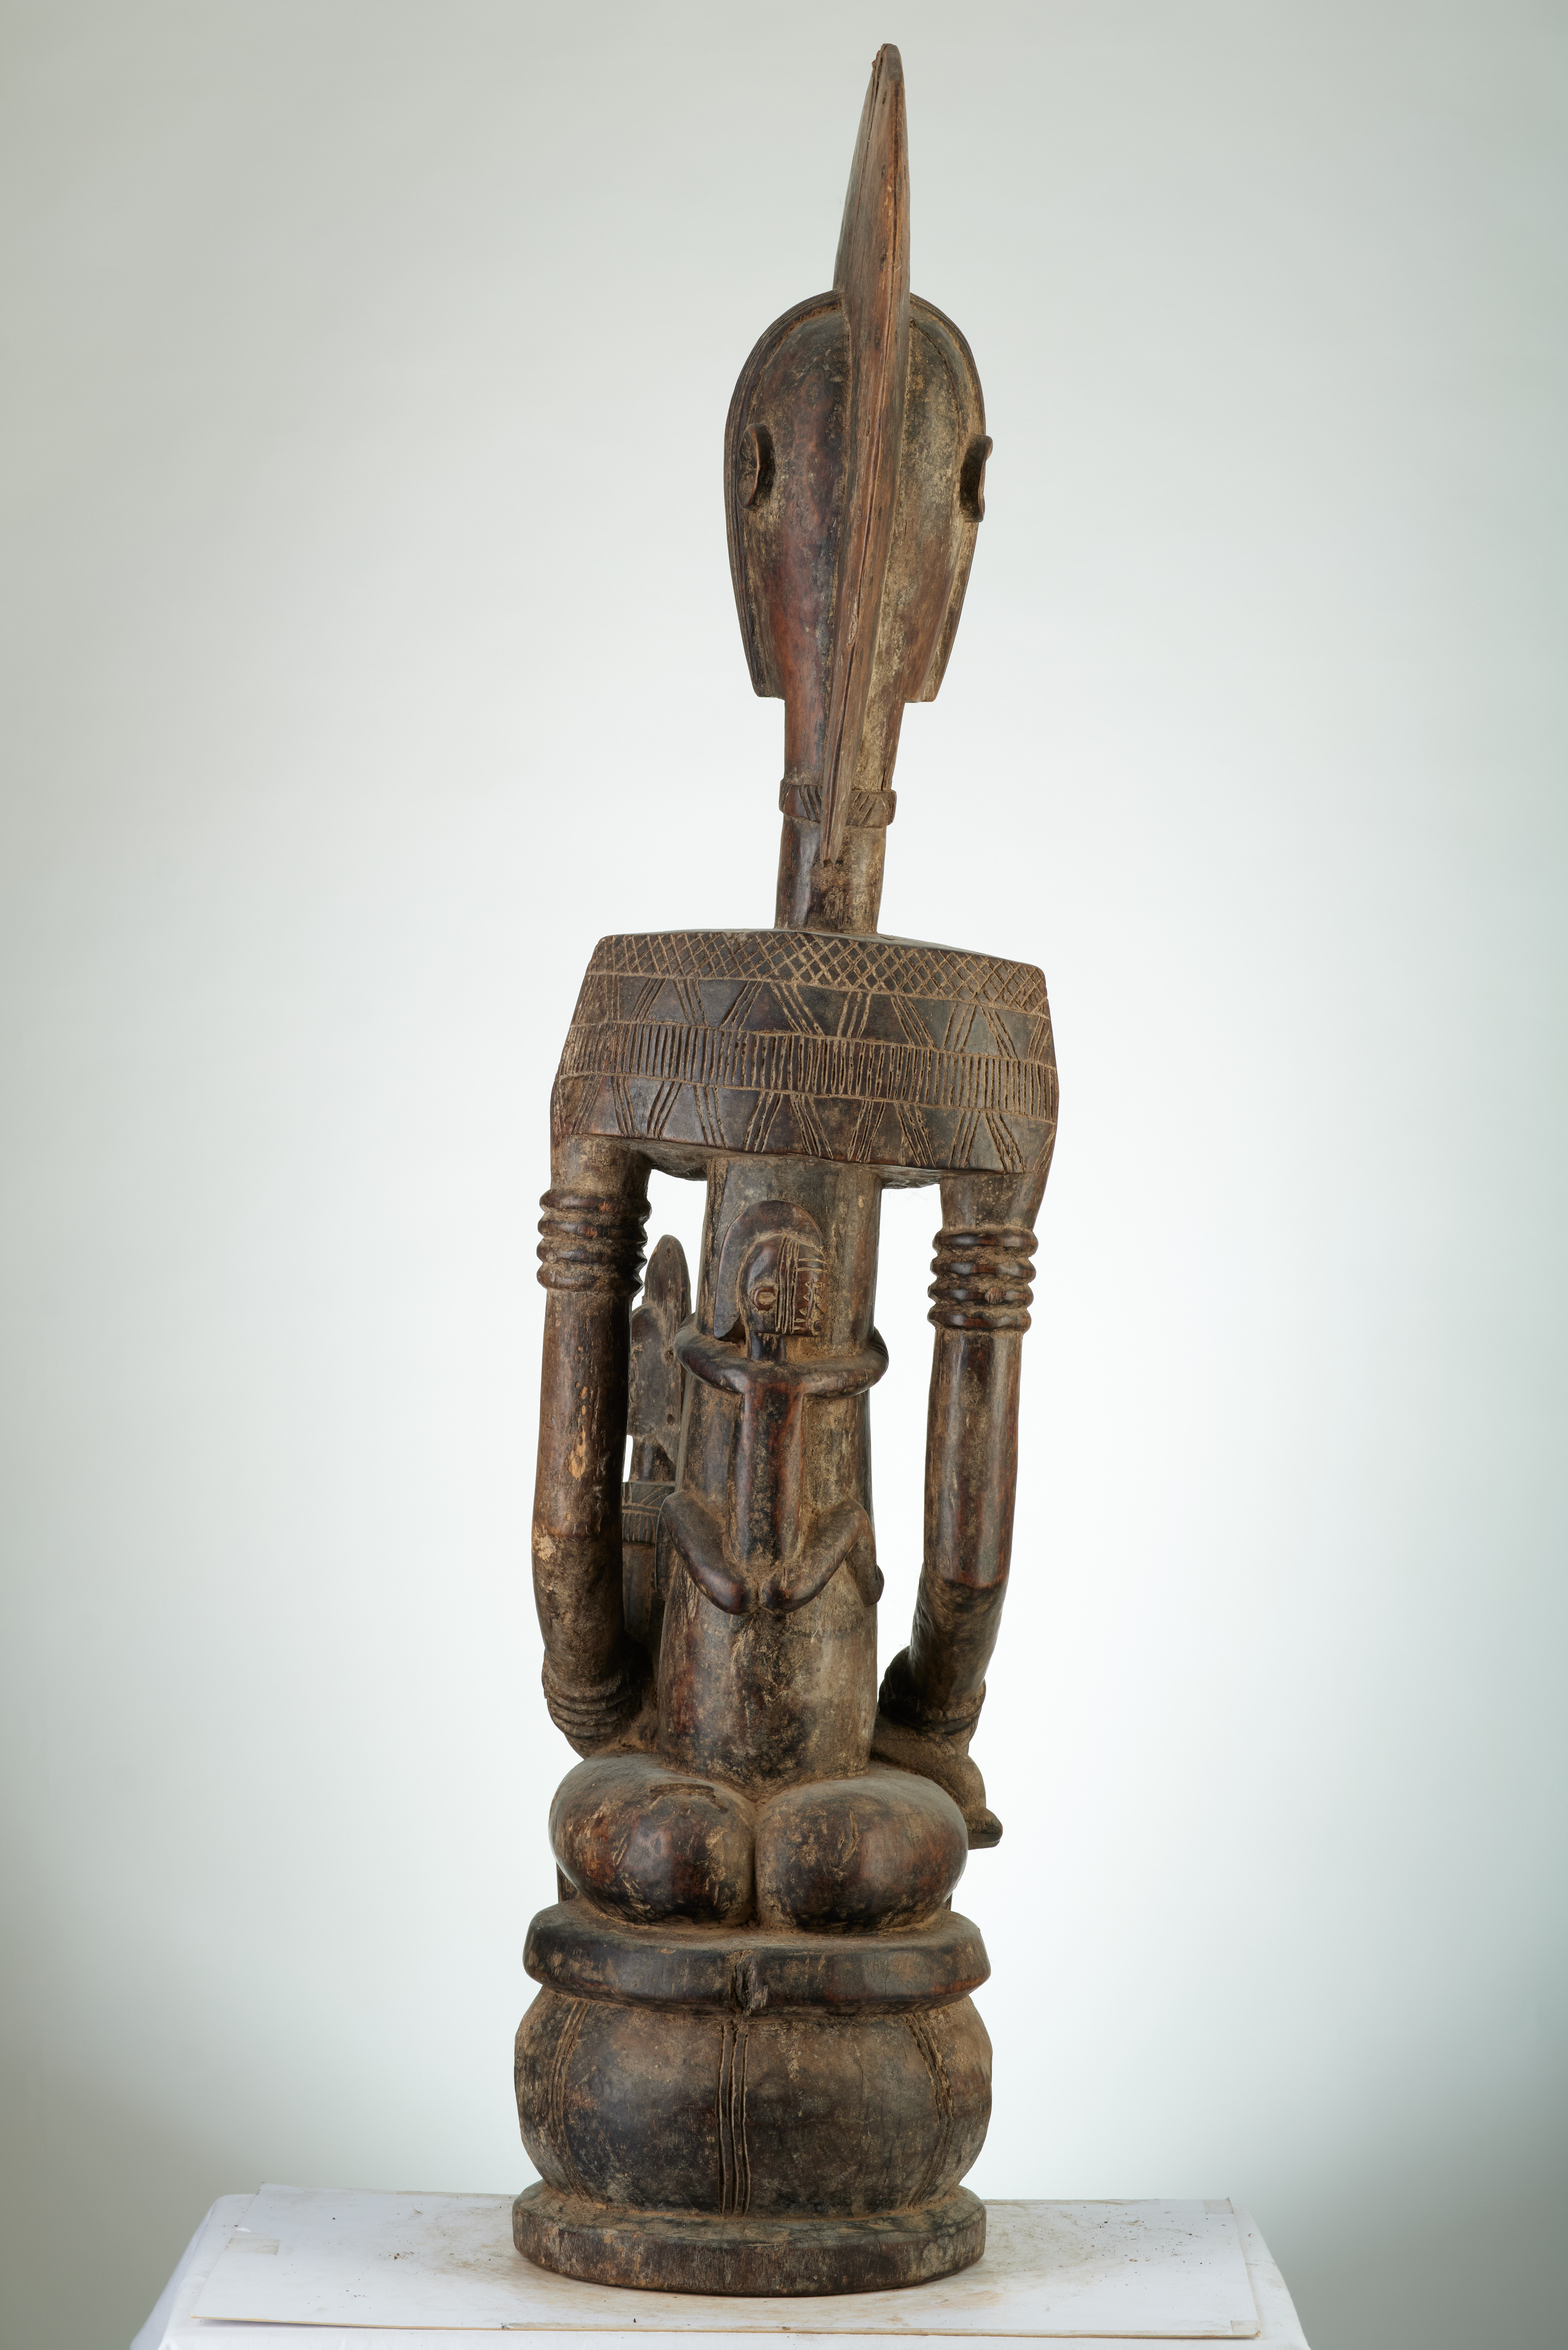 bambara (maternité assise), d`afrique : MALI, statuette bambara (maternité assise), masque ancien africain bambara (maternité assise), art du MALI - Art Africain, collection privées Belgique. Statue africaine de la tribu des bambara (maternité assise), provenant du MALI, 1879: Ancienne Maternité Bambara de la societé Guan appelée Guandoudou.H.100cm.Ancêtre qui porte son enfant sur ses genoux.coiffure en forme de crête. Fin 19eme début  20eme sc.
(col Simon Duchastel de la Howarderie)

Oud Bambara moederschap GUANDOUDOU,voorouder met een kind op haar schoot.Haartooi in kamvorm,zware borsten H100cm.. art,culture,masque,statue,statuette,pot,ivoire,exposition,expo,masque original,masques,statues,statuettes,pots,expositions,expo,masques originaux,collectionneur d`art,art africain,culture africaine,masque africain,statue africaine,statuette africaine,pot africain,ivoire africain,exposition africain,expo africain,masque origina africainl,masques africains,statues africaines,statuettes africaines,pots africains,expositions africaines,expo africaines,masques originaux  africains,collectionneur d`art africain